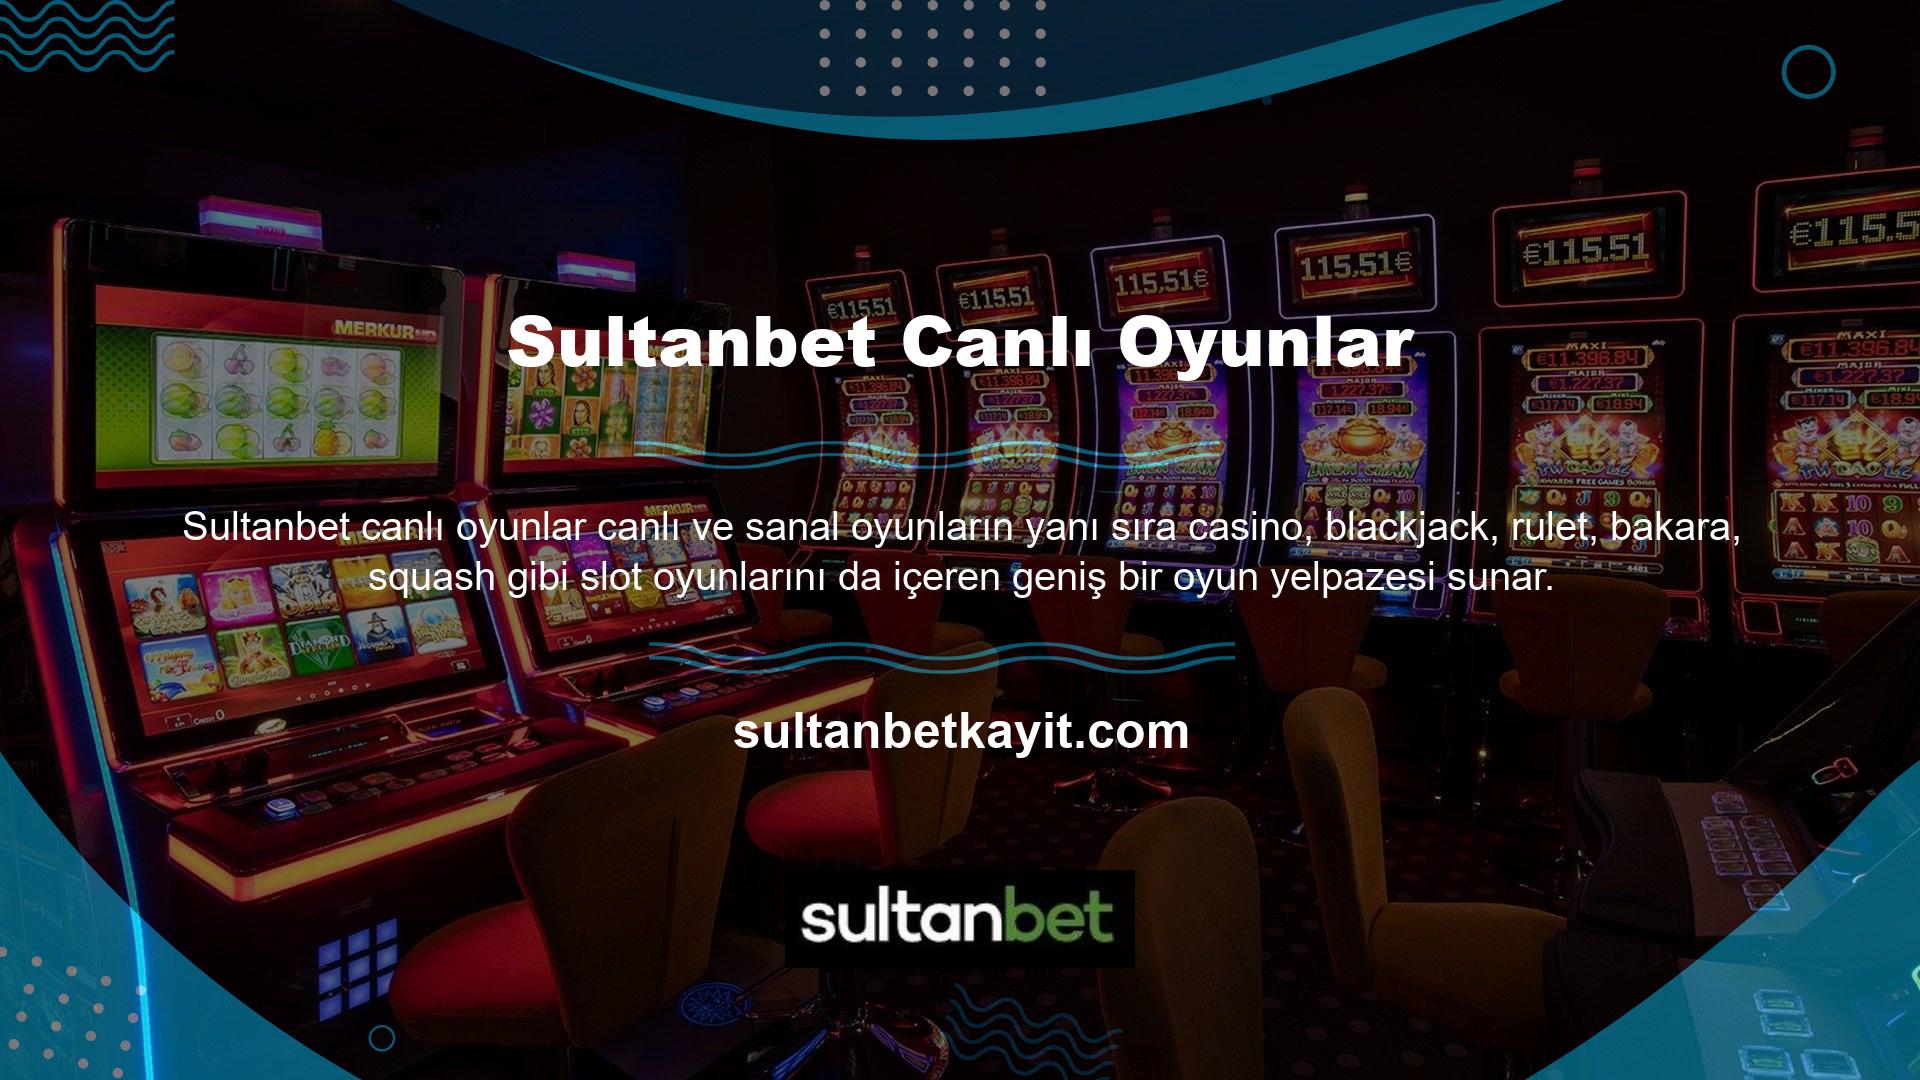 Sultanbet oyunlarını oynayabilir ve mevcut bonuslar ile premium oyunlar oynayarak daha fazla para kazanabilirsiniz